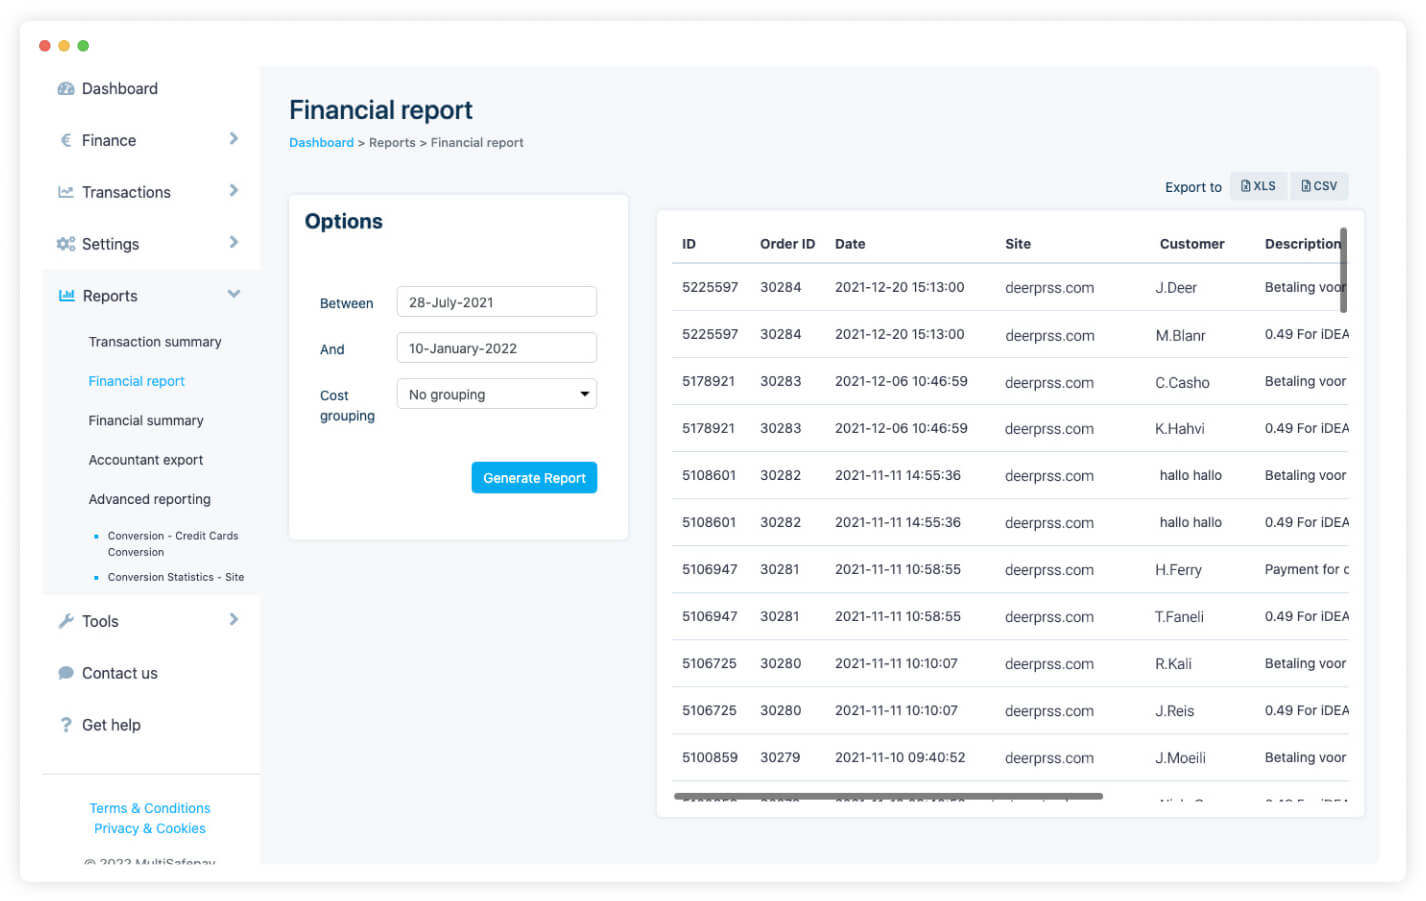 Het MultiSafepay dashboard toont verschillende financiele rapportages en opties